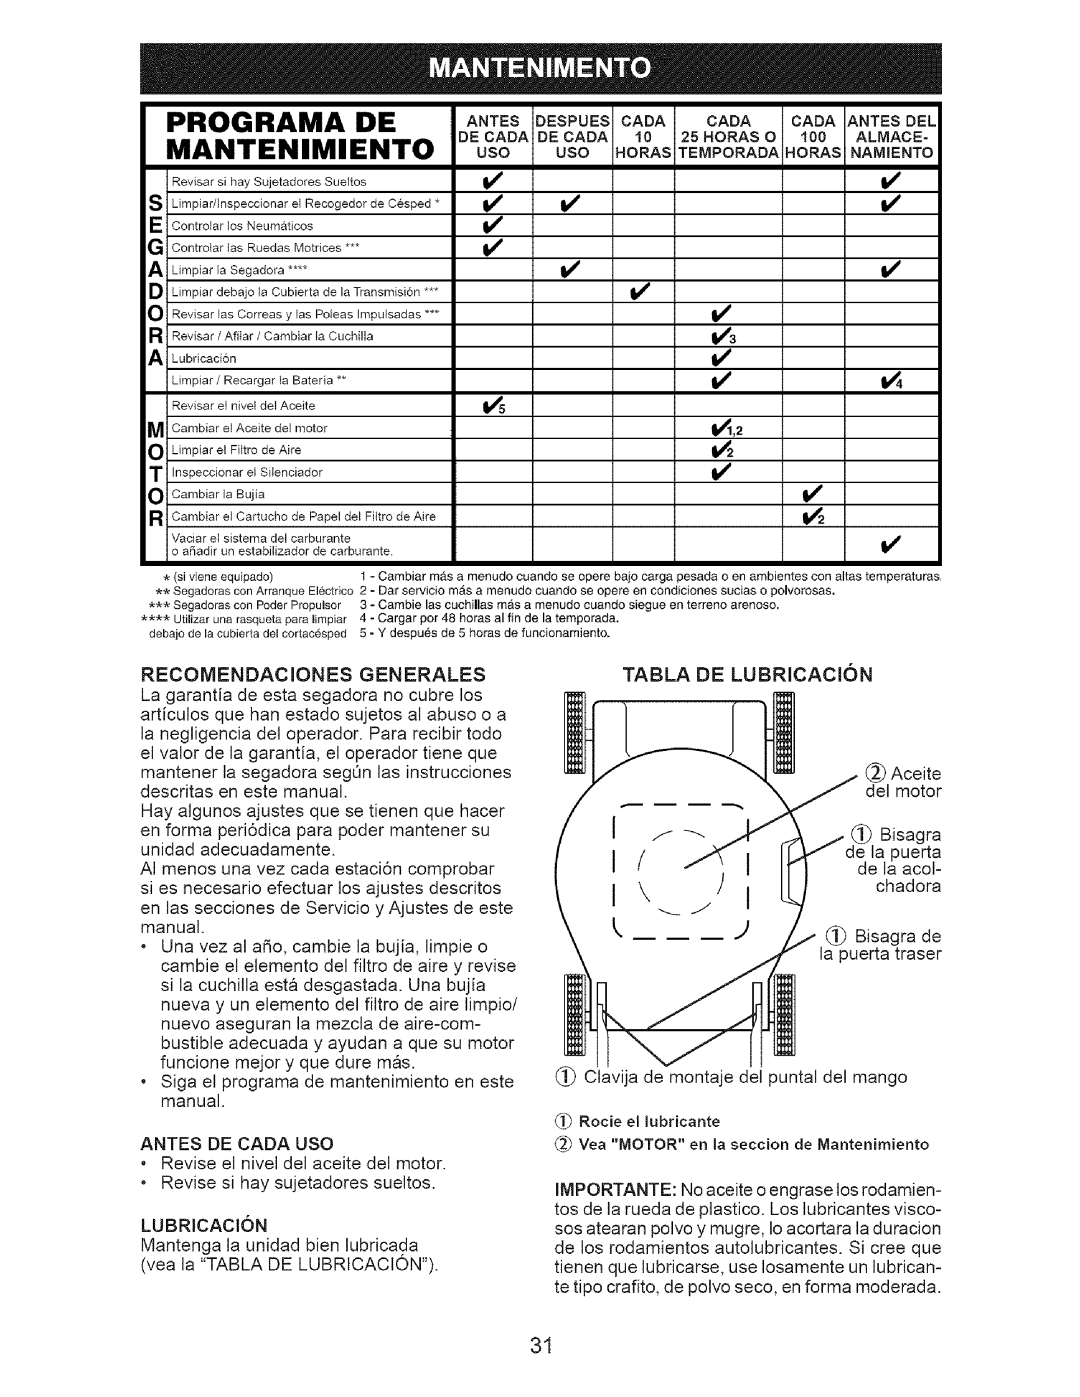 Craftsman 917-371813 manual Programa De, Mantenimiento, DECAOAOECAOAI0 2 .ORASO 100 ALMACE 